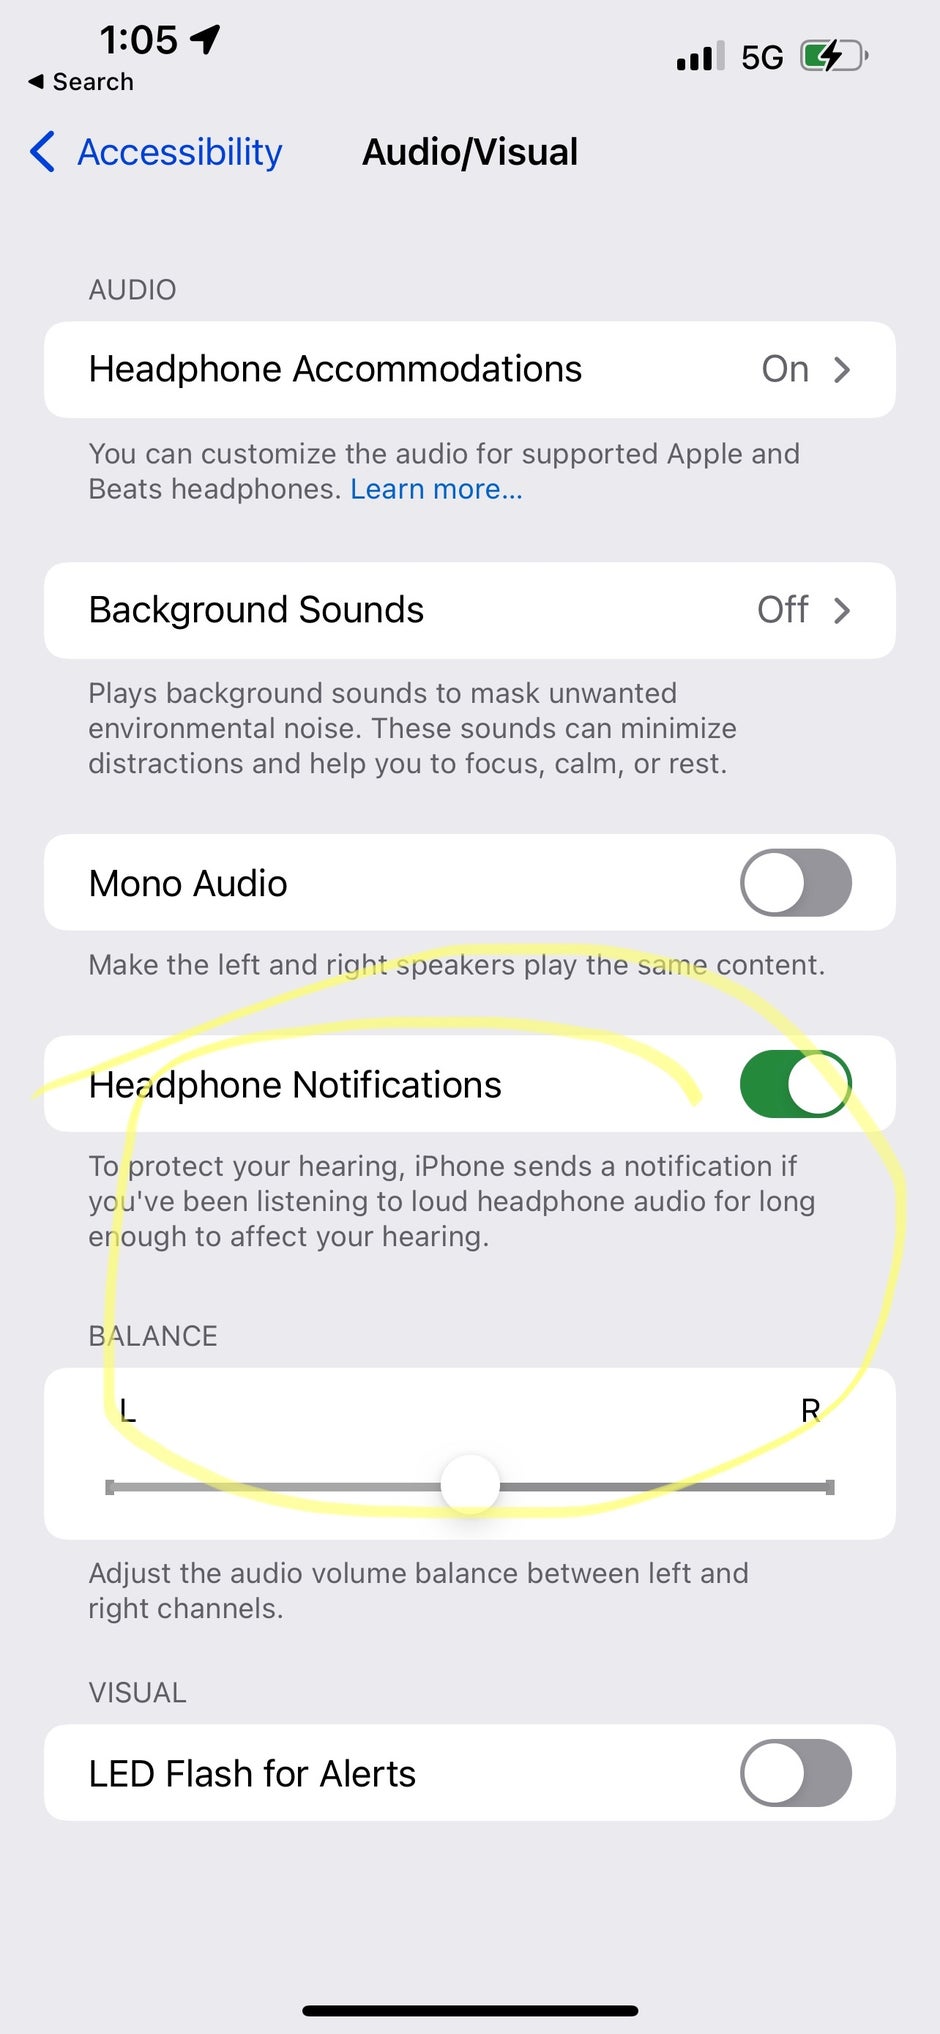 Di iPhone 13, opsi untuk mengaktifkan pembatalan bising pada panggilan telepon tidak ada - Masalah utama iOS 15 adalah menghapus pembatalan bising untuk panggilan pada seri 5G iPhone 13